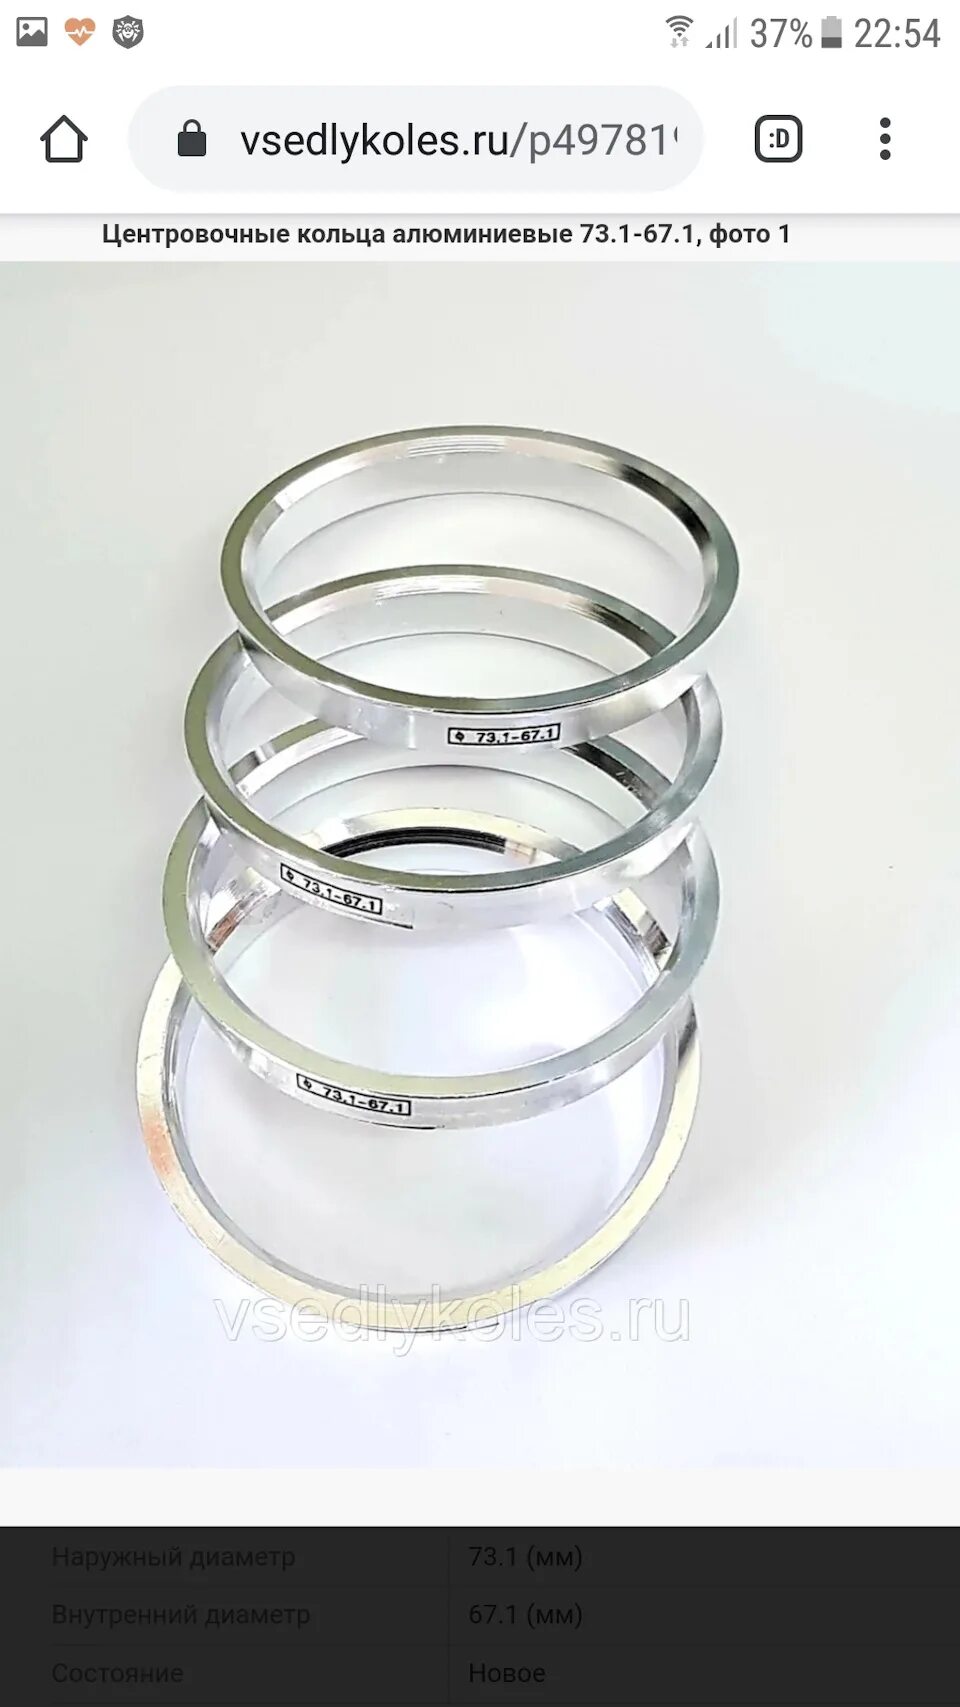 Центровочные кольца для литых дисков размеры таблица. Центровочные кольца 73.1-67.1. Центровочные кольца для дисков 73.1 на 67.1. Кольцо алюминиевое (67.1-63.4). Центровочные кольца 67.1-60.1.